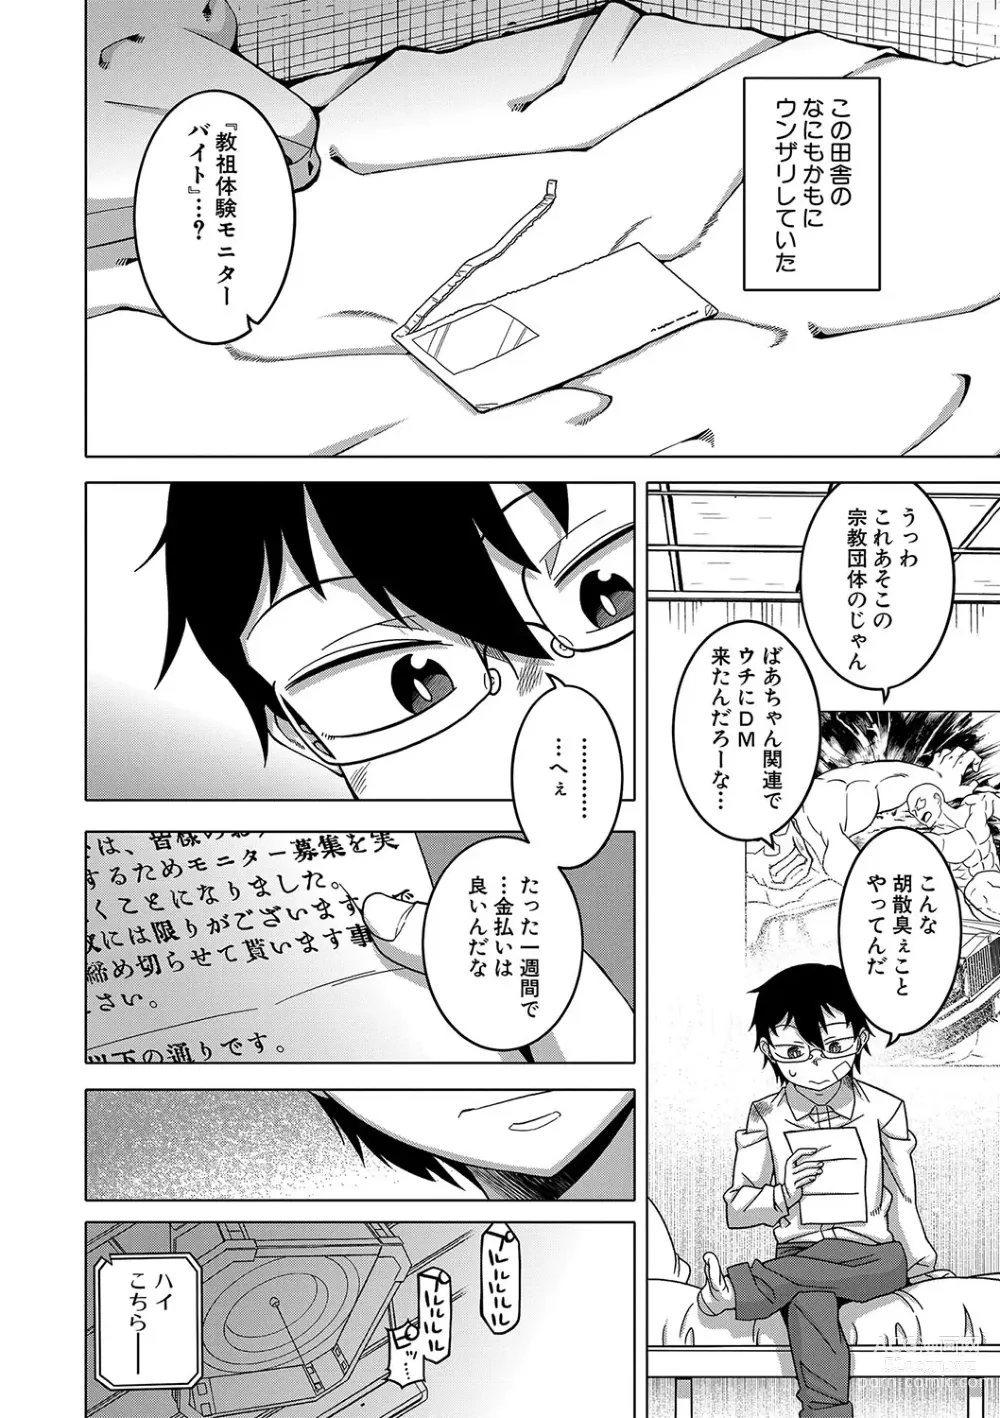 Page 9 of manga Kami-sama no Tsukurikata